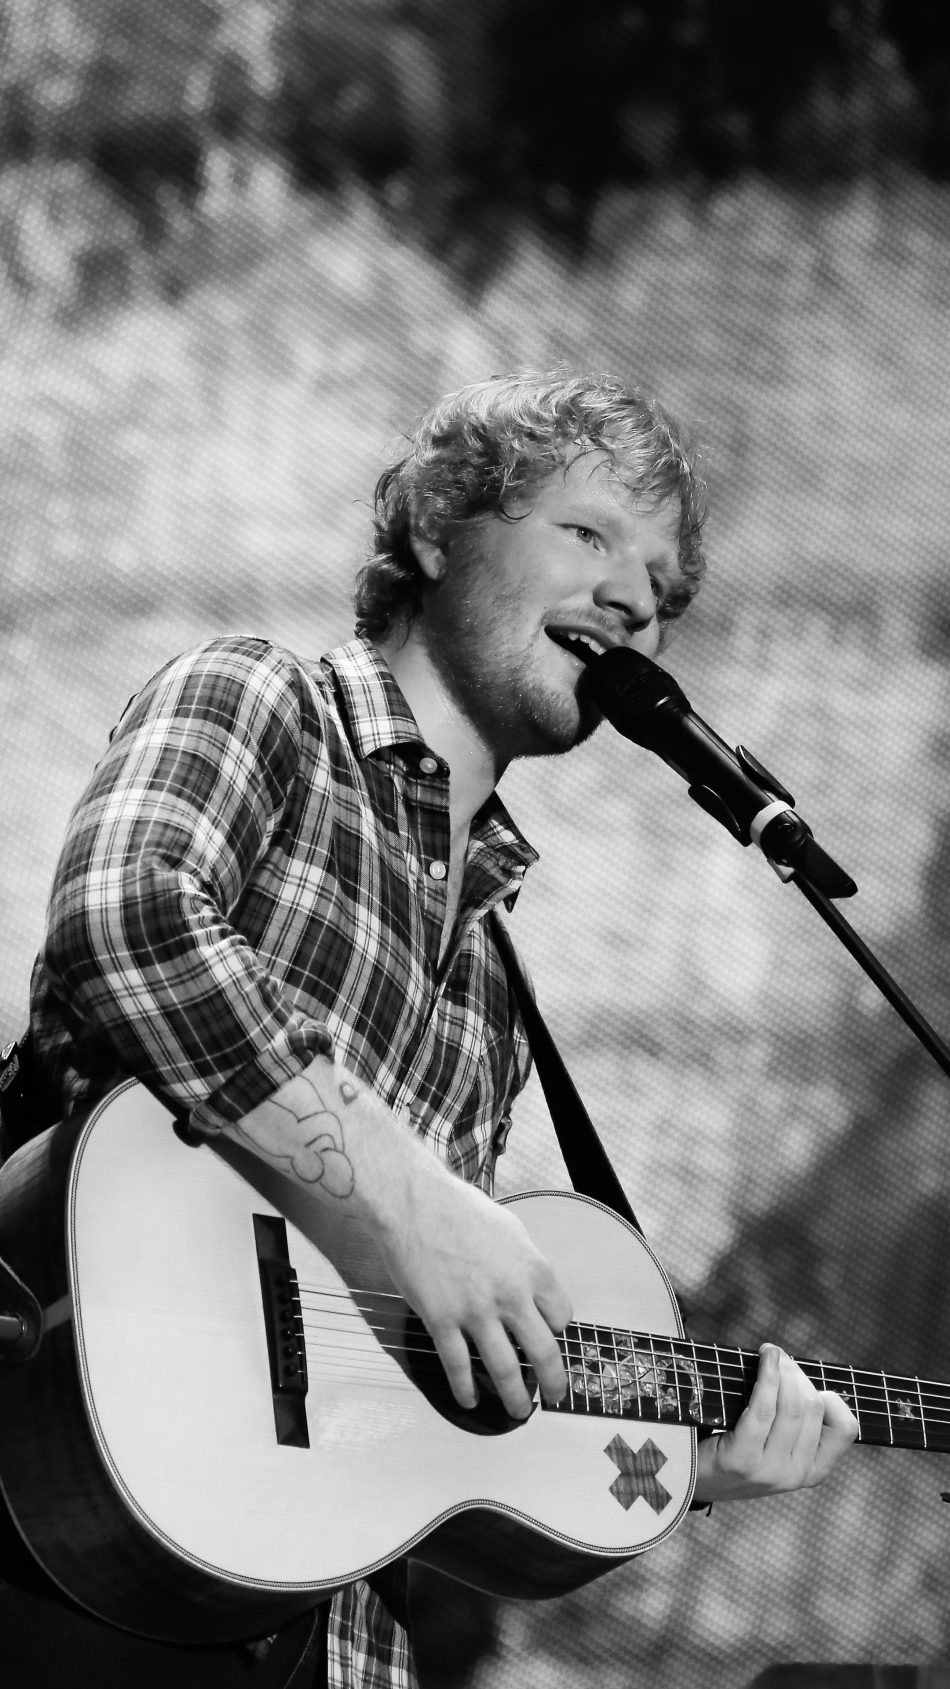 Singer Ed Sheeran Black & White 4k Ultra Hd Mobile - Ed Sheeran Wallpaper Hd - HD Wallpaper 